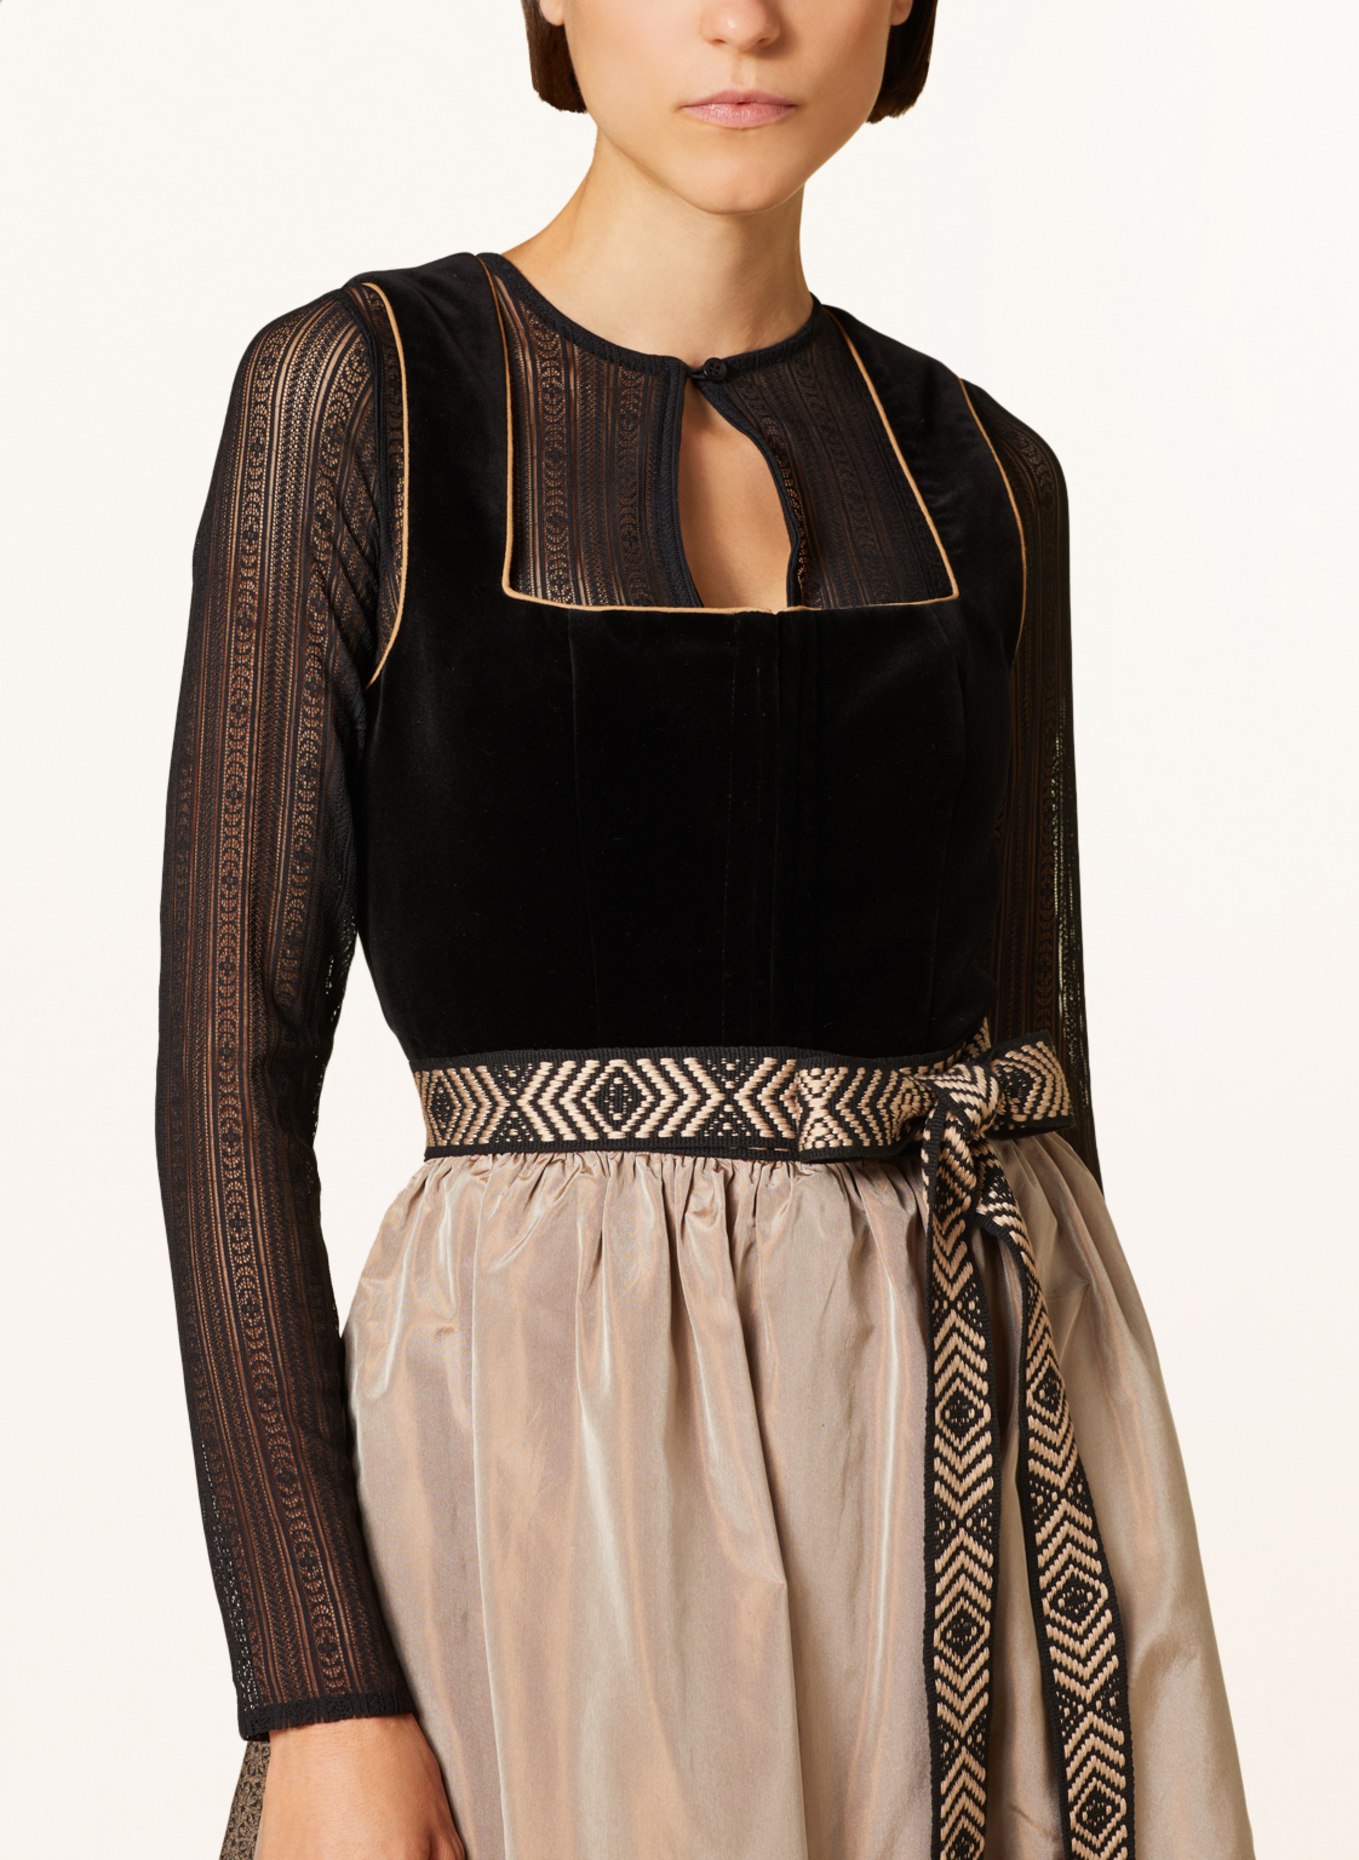 Hammerschmid Dirndl blouse made of lace, Color: BLACK (Image 3)